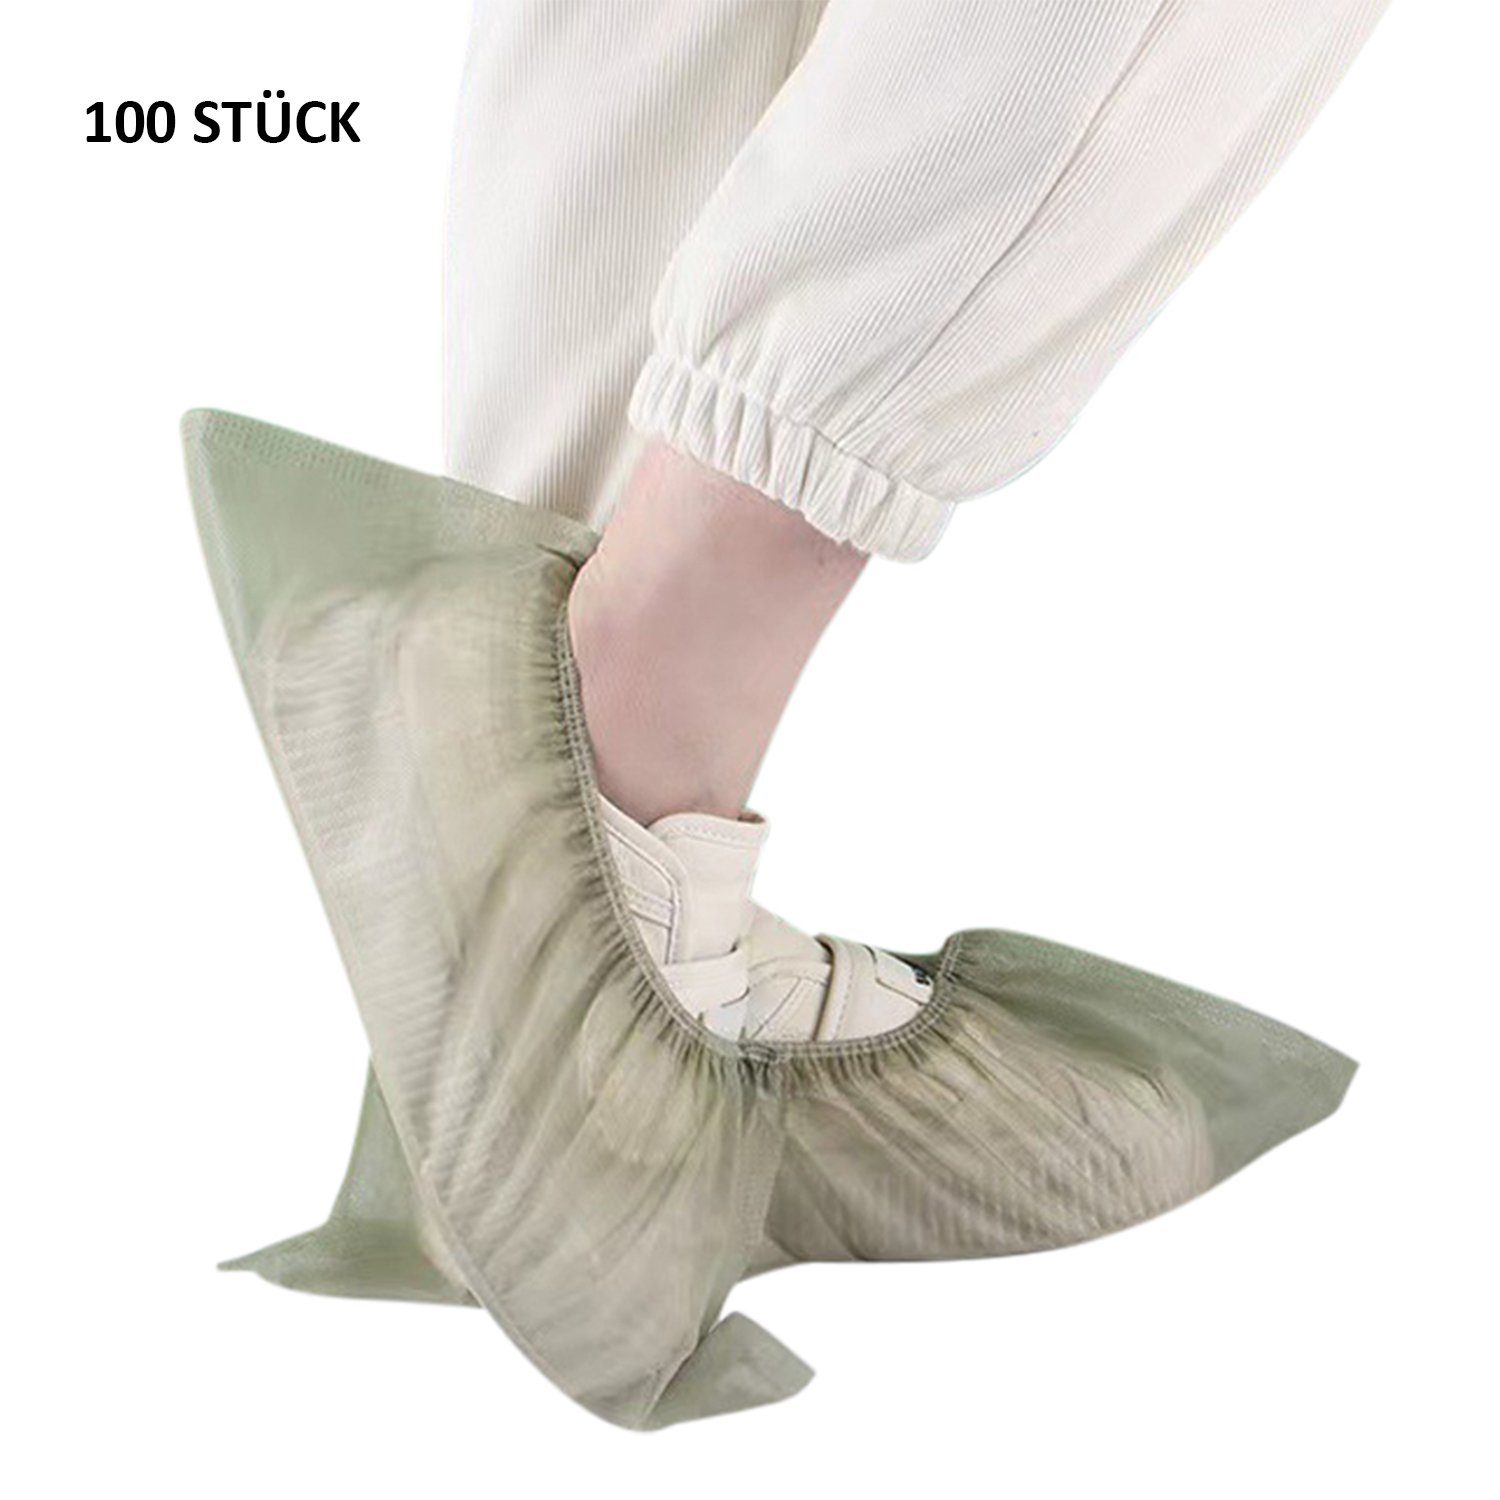 Schuhüberzieher rutschfest Daisred hygienische Einweg-Stiefel Schuhüberzieher 100 Stück Grün